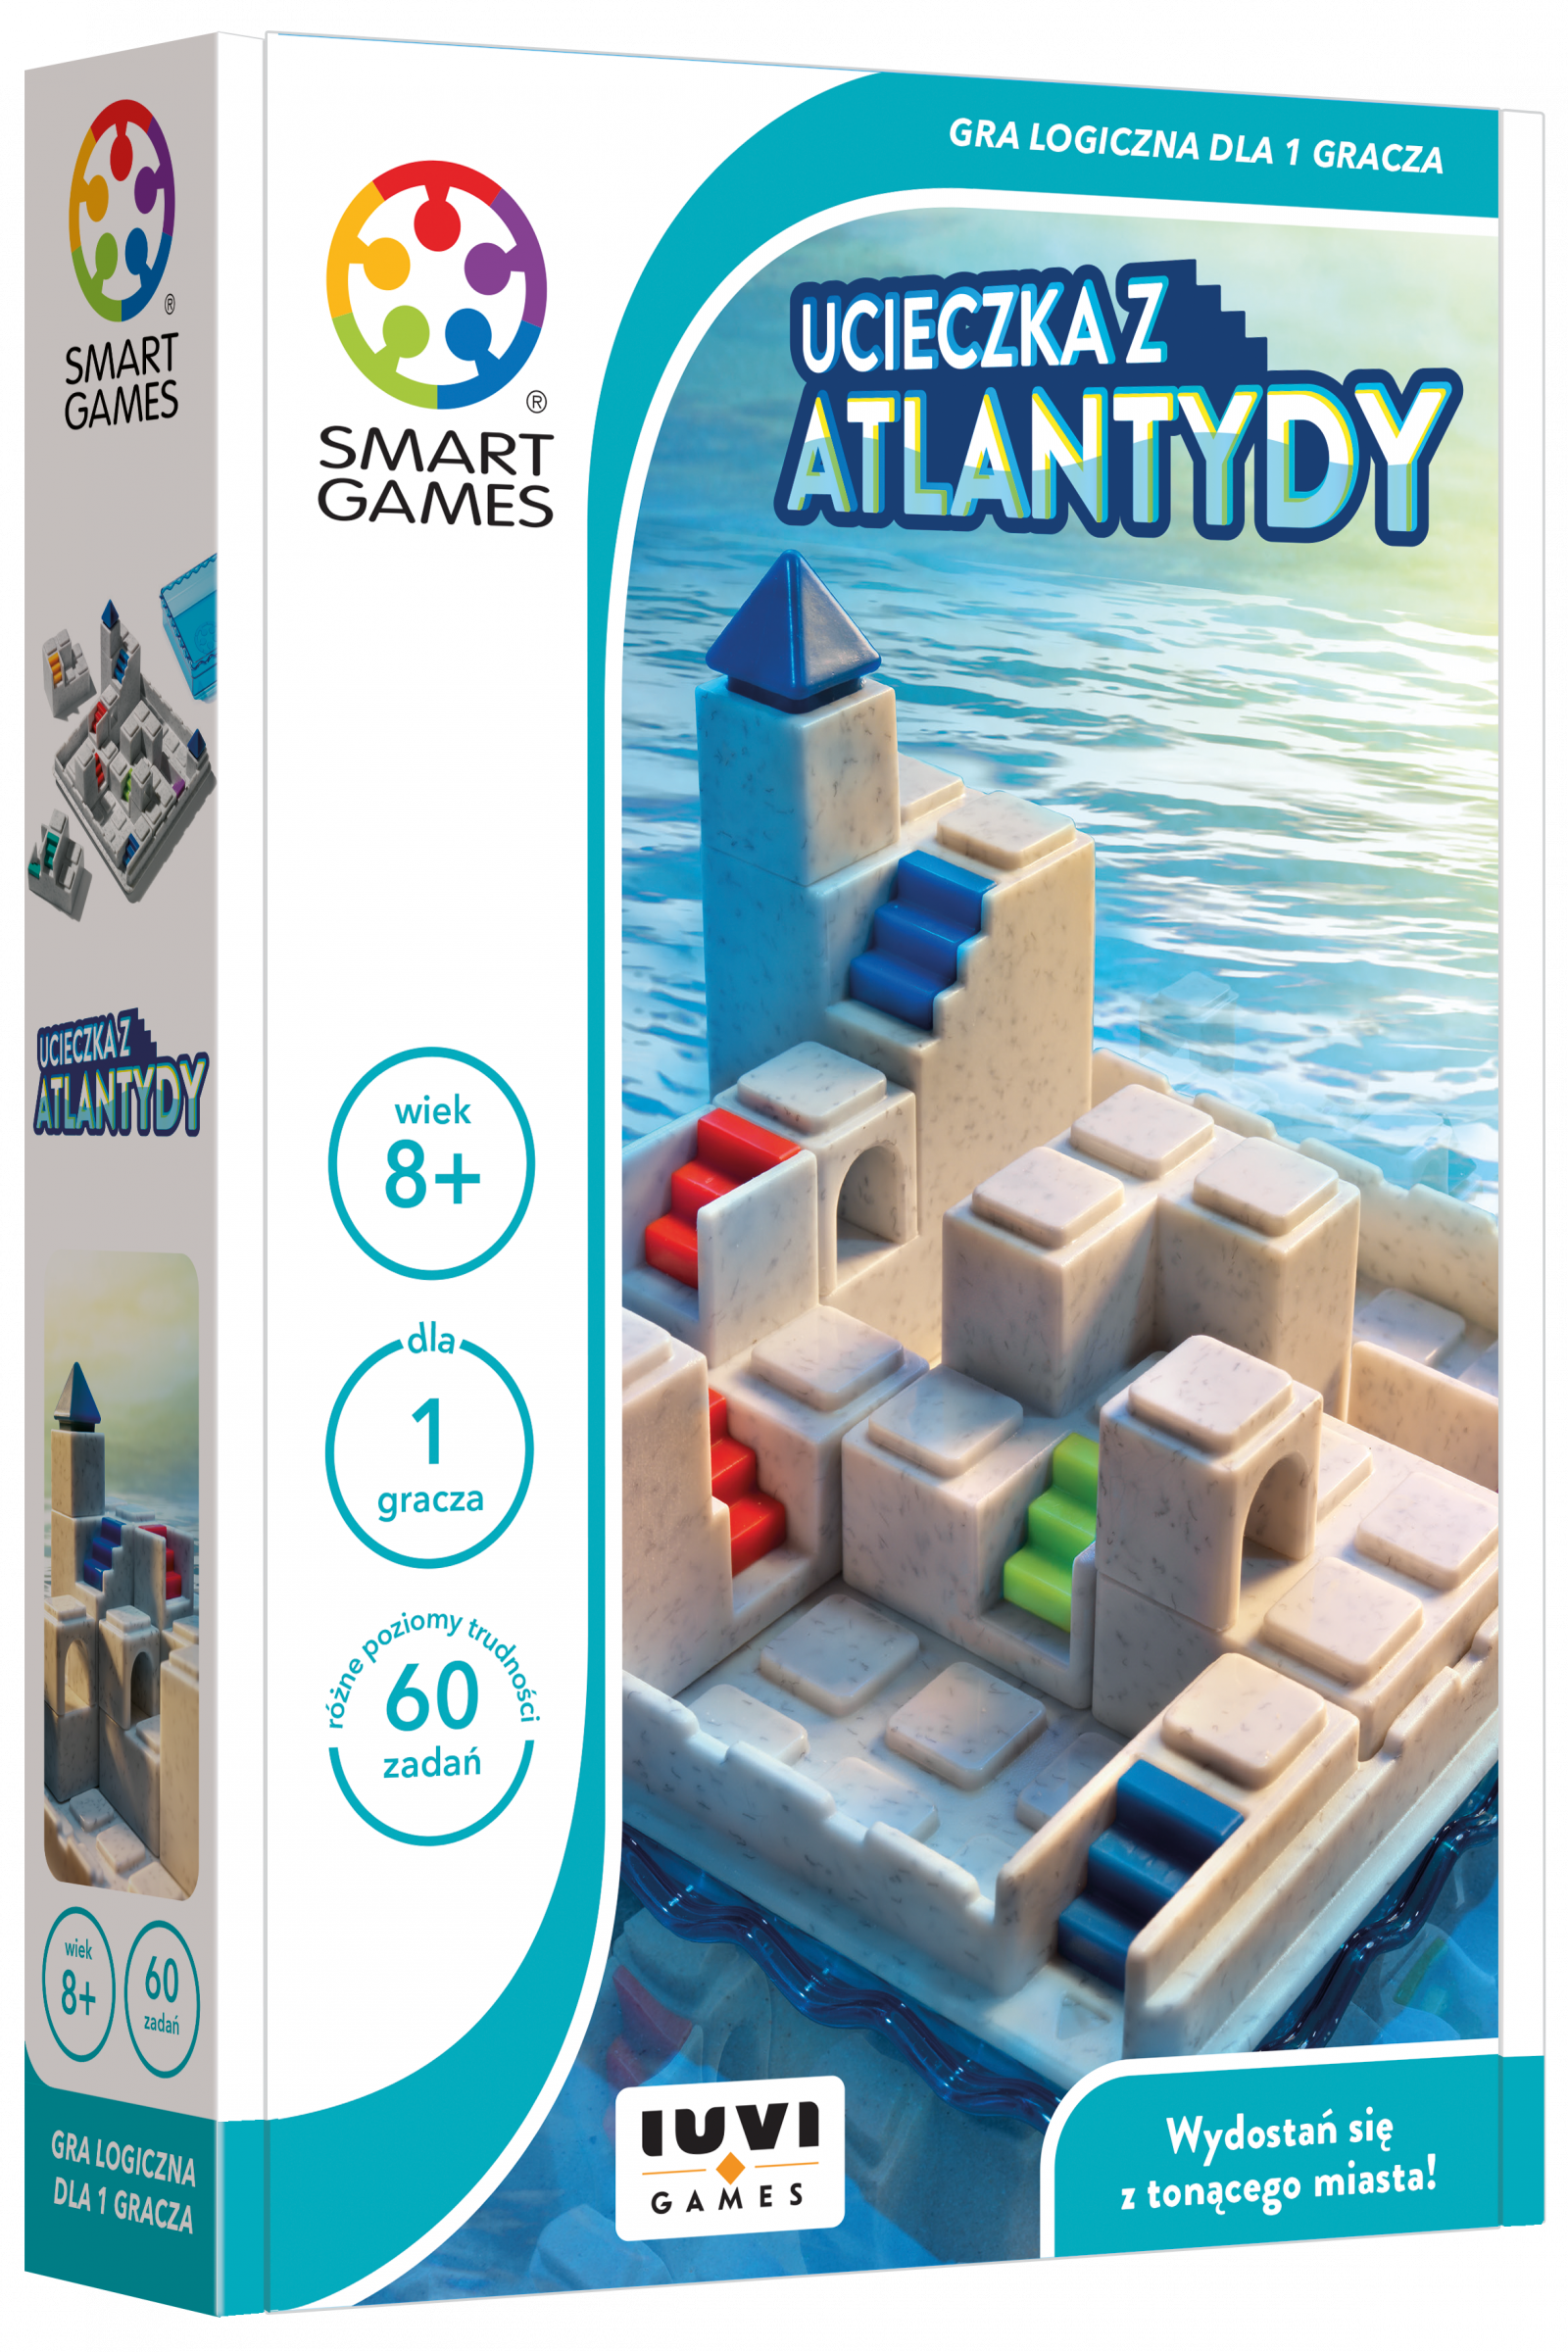 Smart Games - Ucieczka z Atlantydy